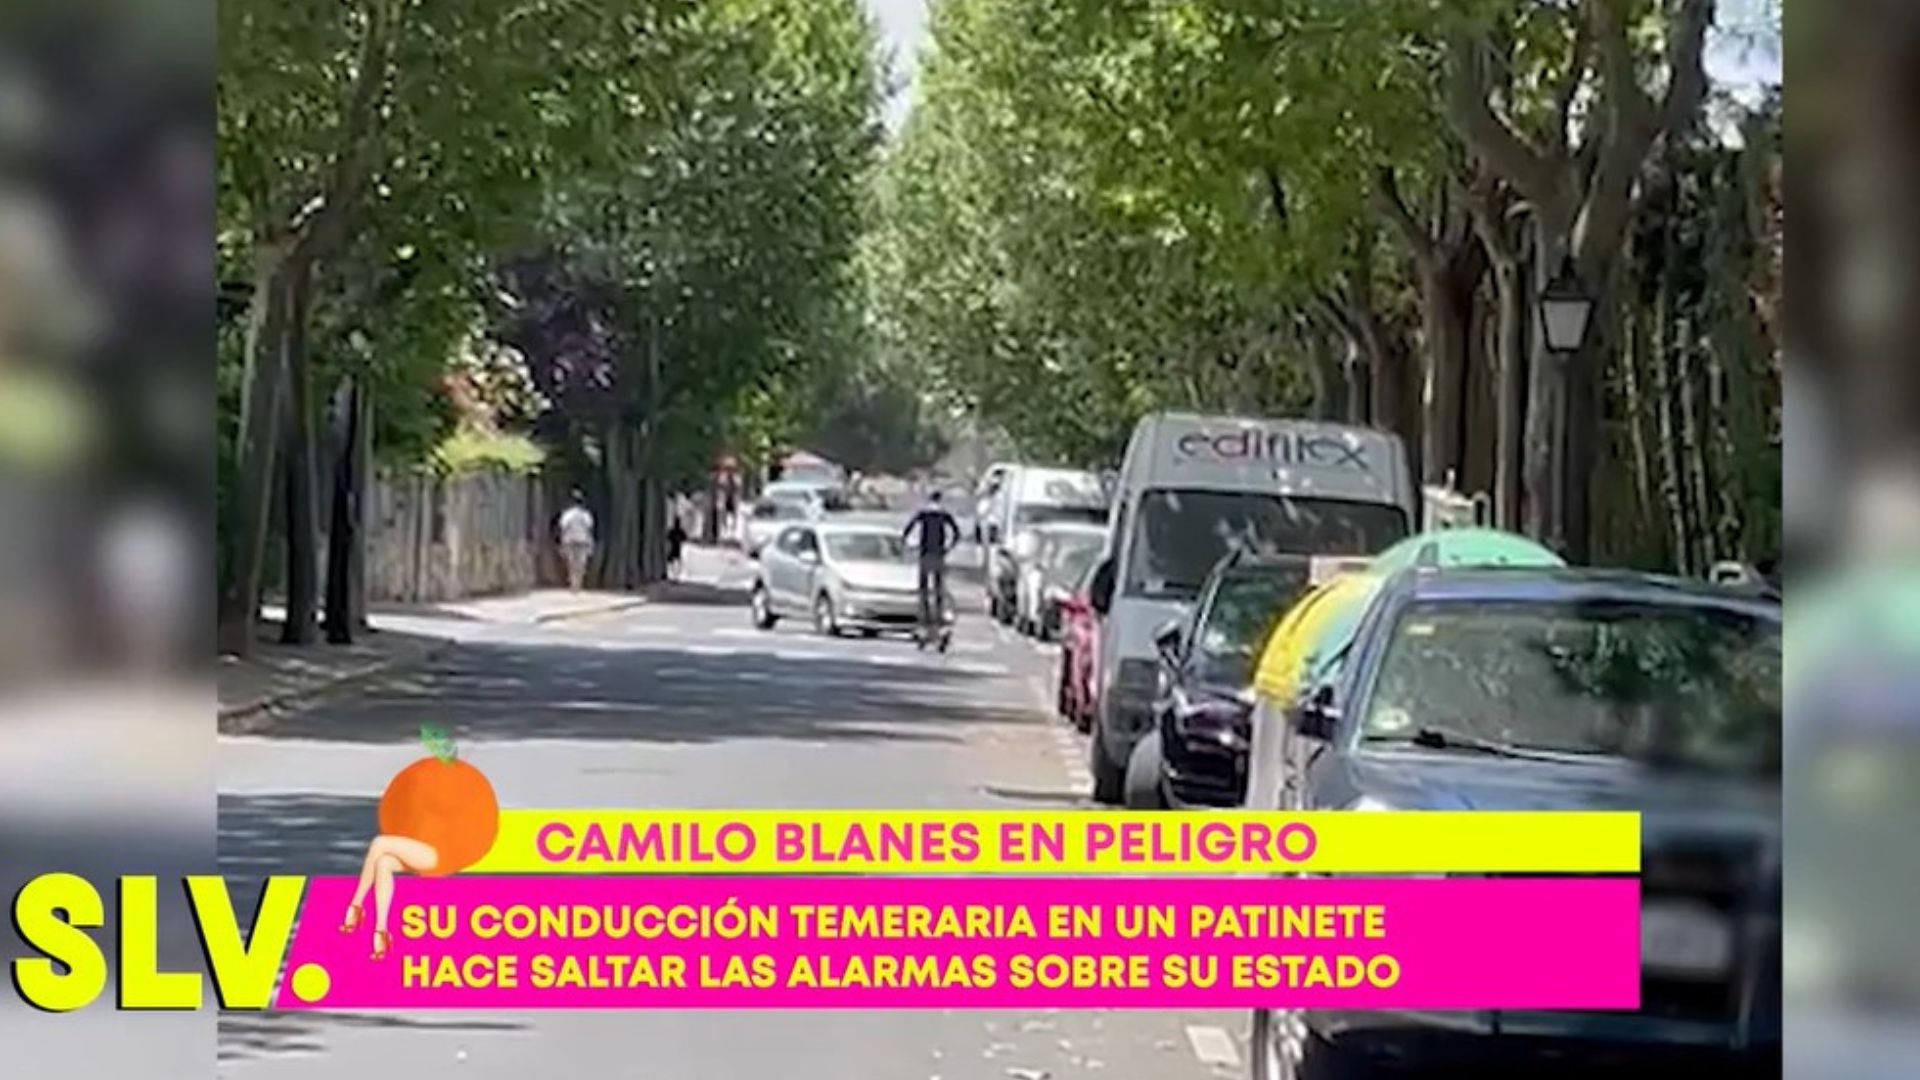 Camilo Blanes, hijo de Camilo Sesto, a punto de tener un accidente con su patinete